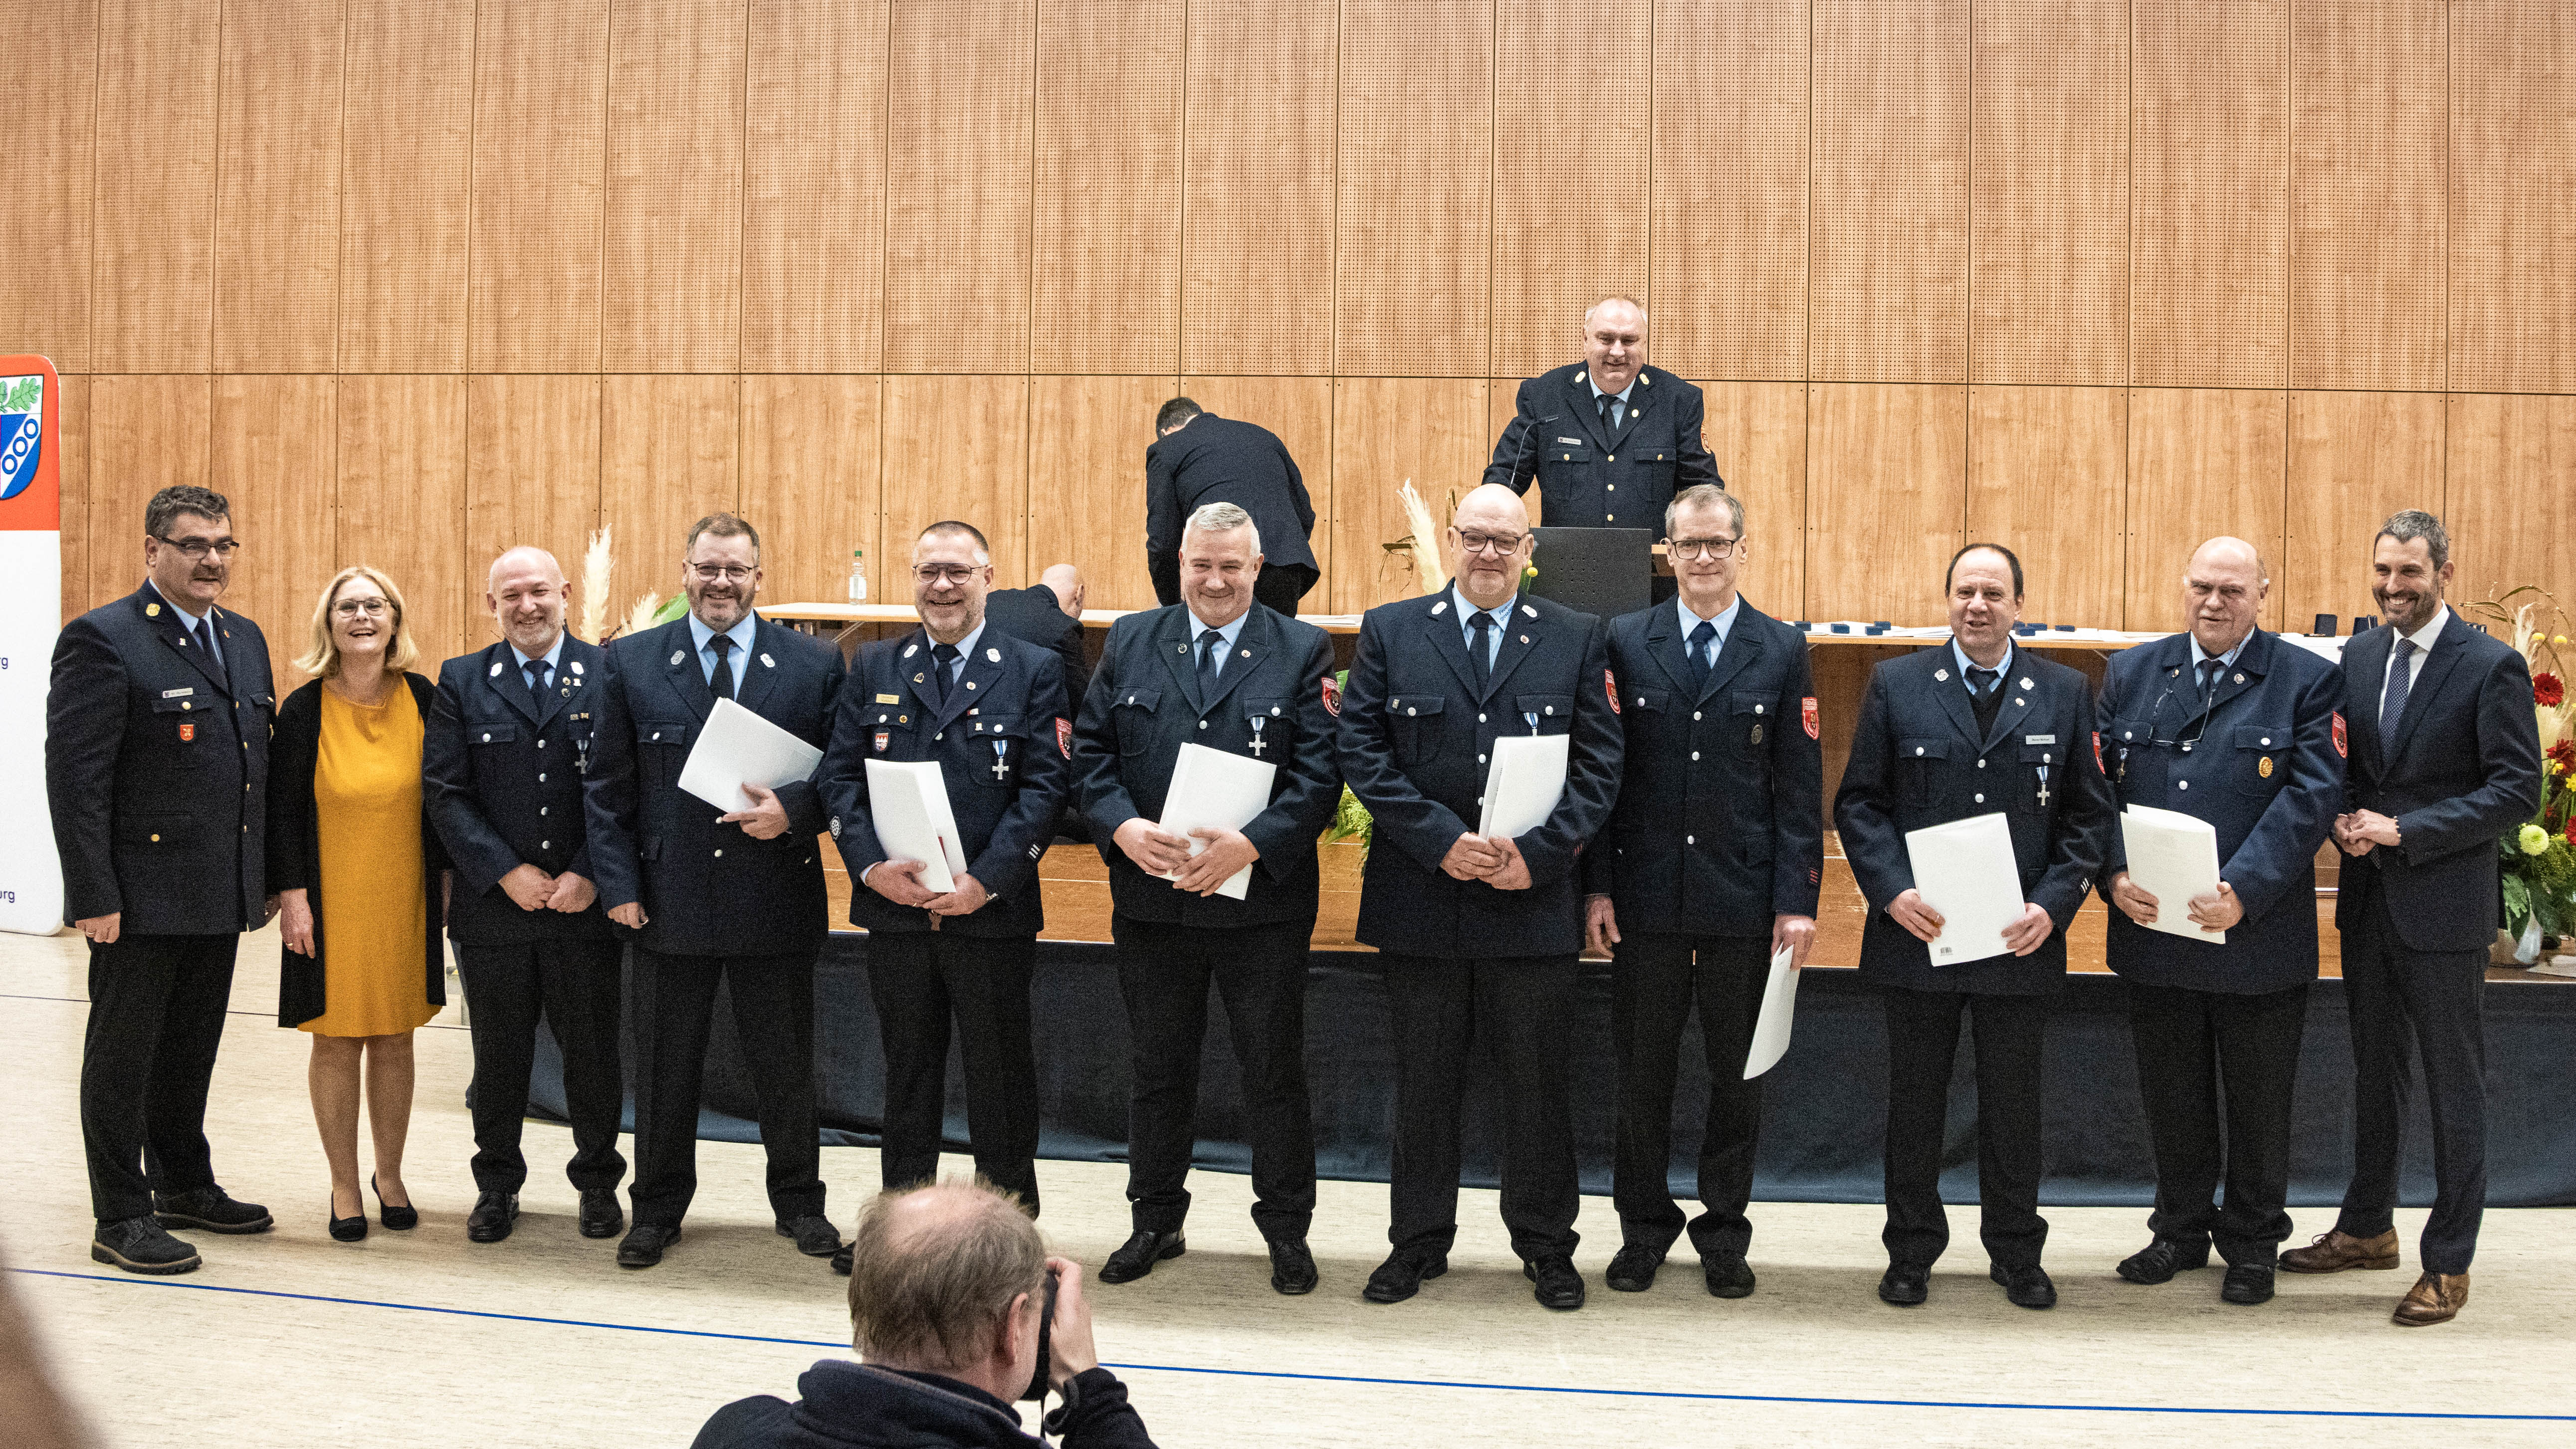 7 staatliche Ehrenzeichen und 1 Ehrenkreuz in Silber für Großostheimer Feuerwehrleute